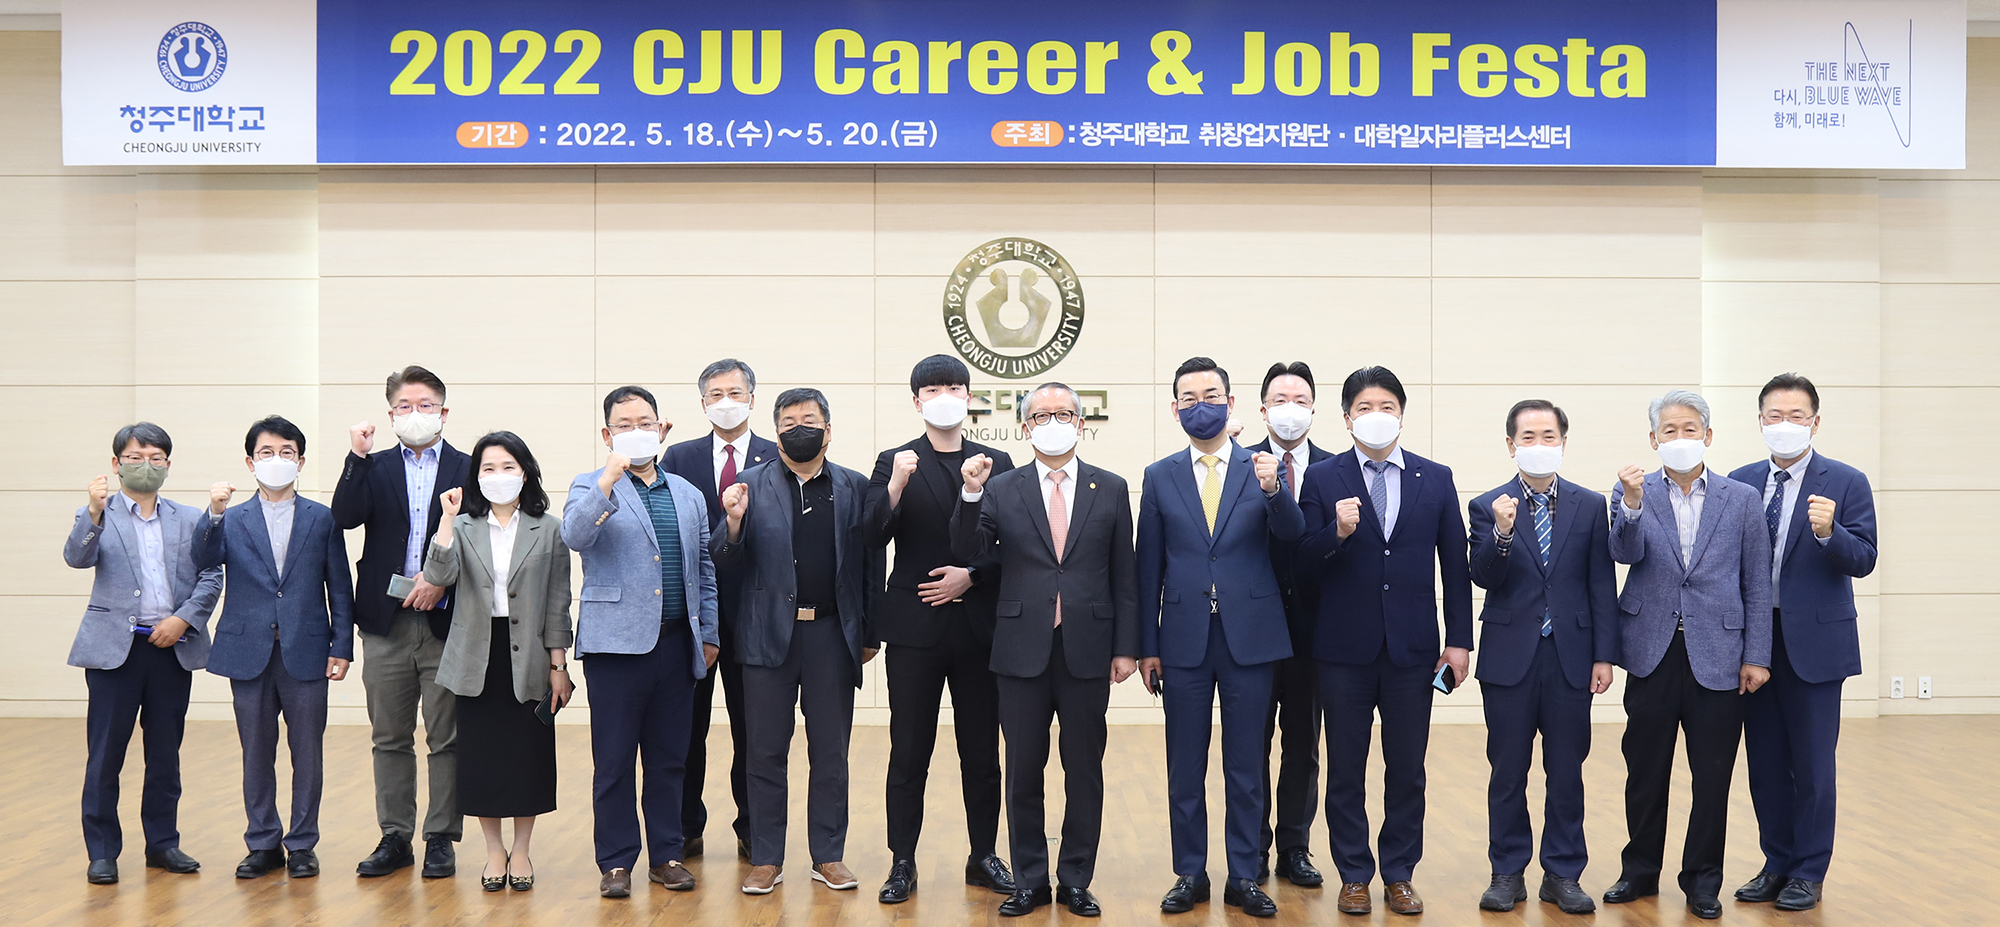 청주대학교는 다채로운 진로 취·창업 지원 프로그램인 ‘2022 CJU Career & Job Festa’를 오는 20일까지 3일간 진행하고 있다.